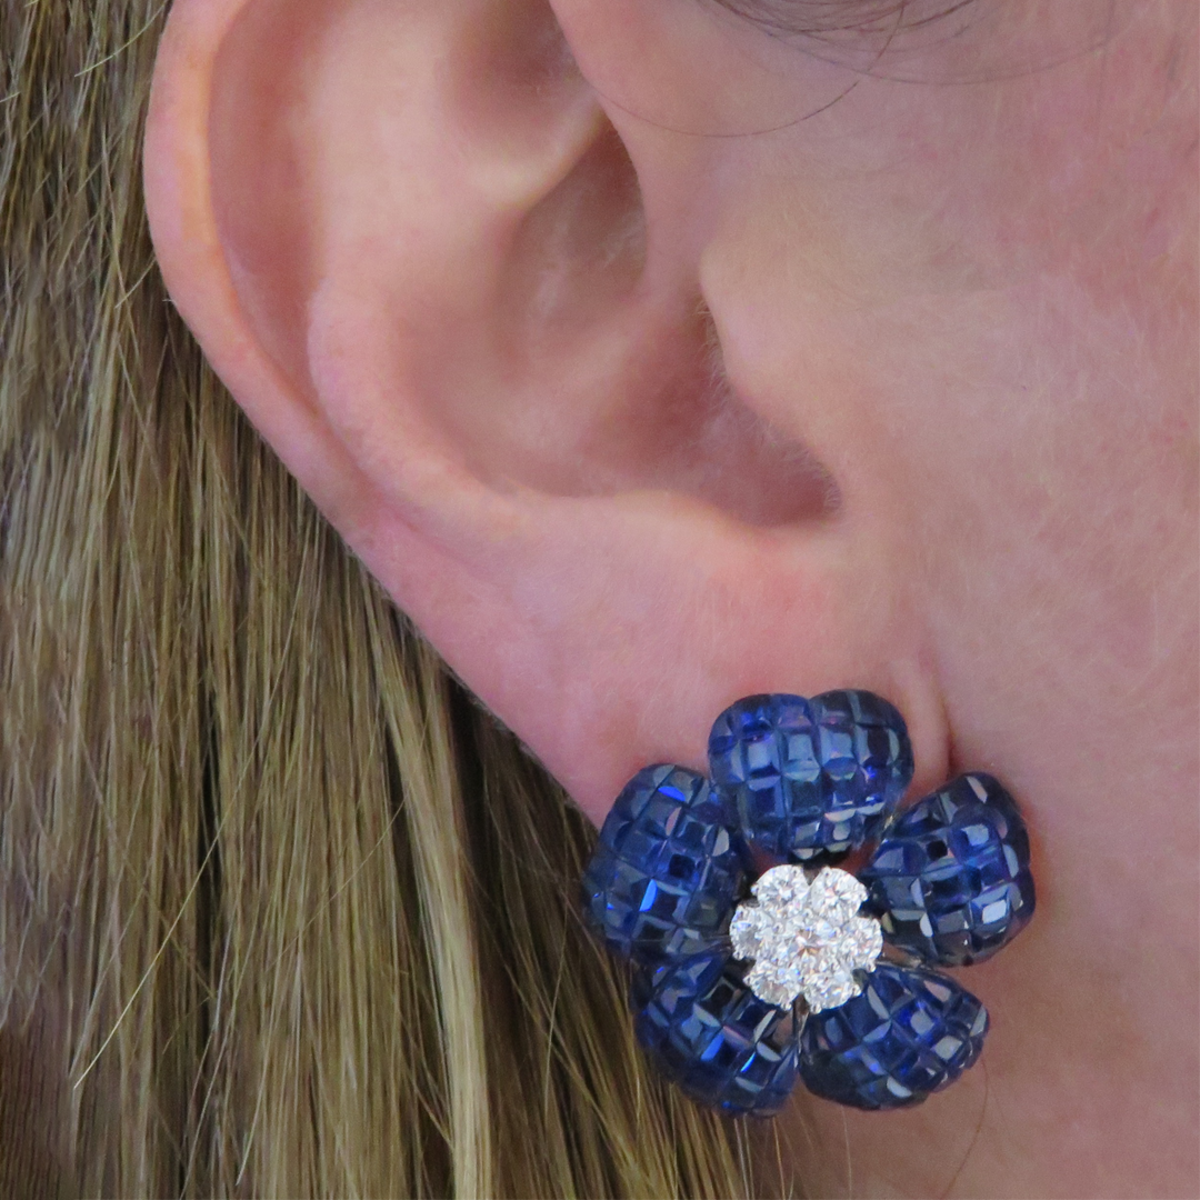 Post-1980s 18KT White Gold Blue Sapphire & Diamond Flower Earrings worn on ear